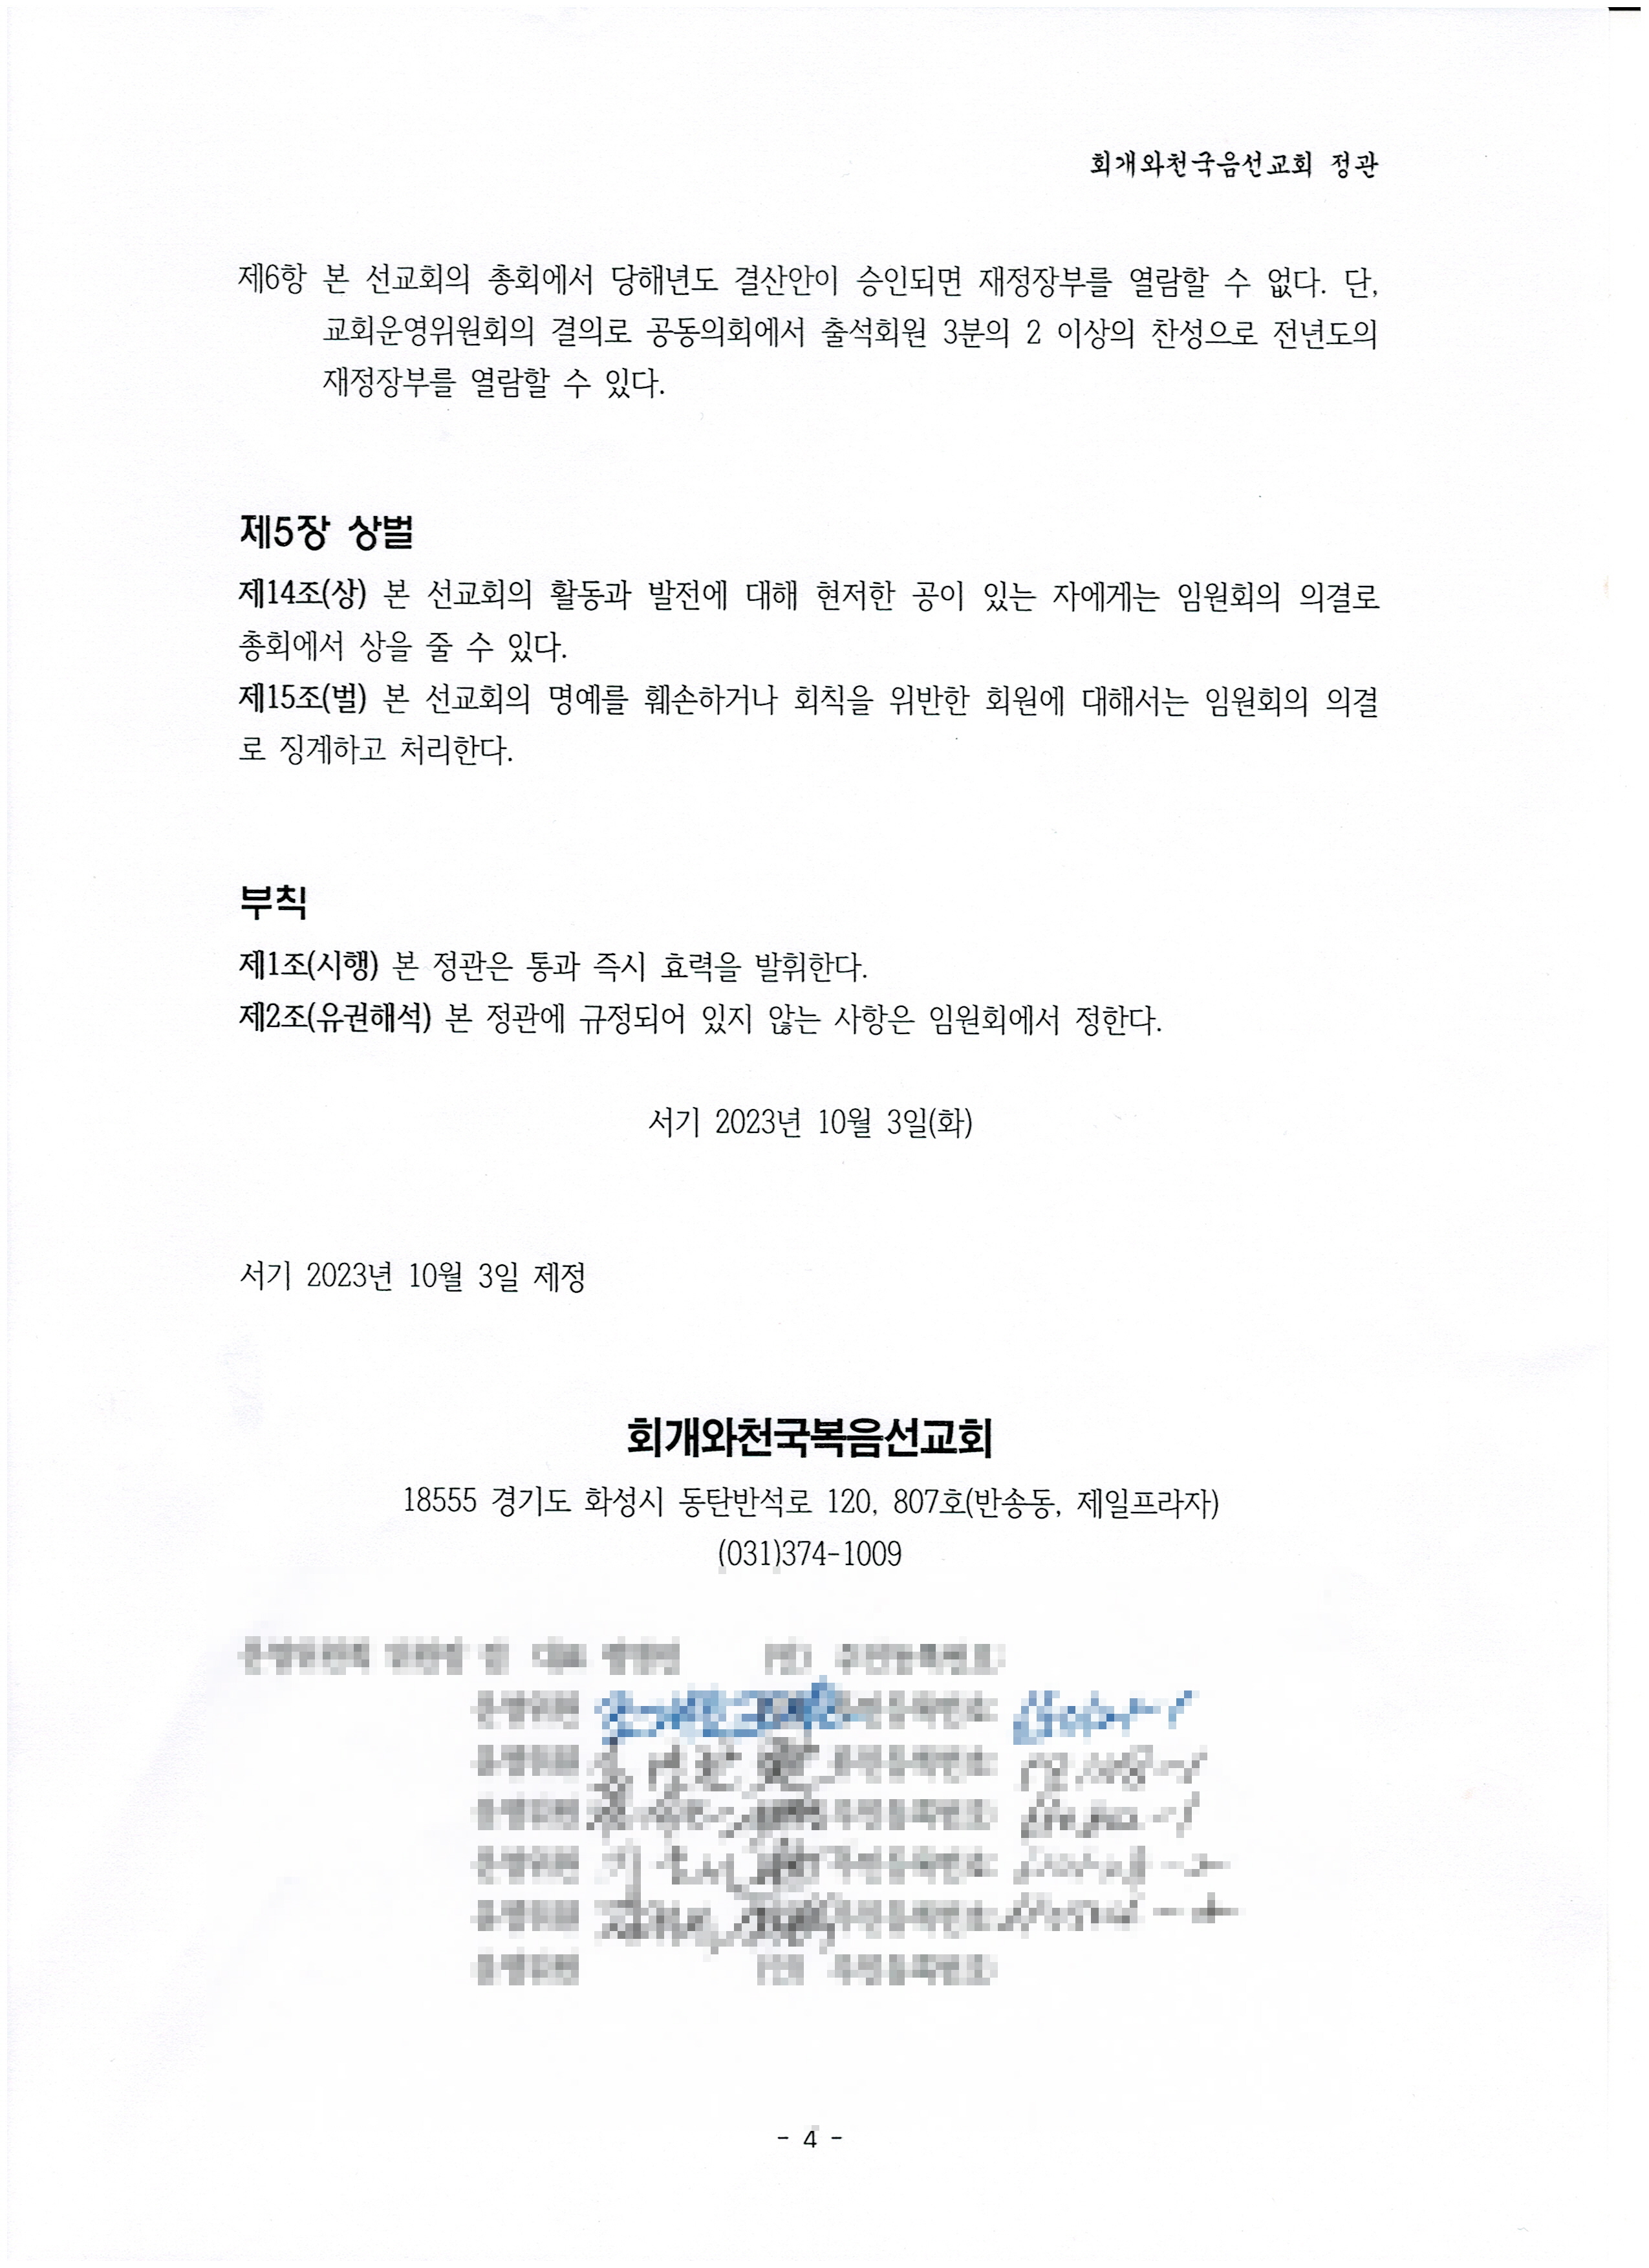 2023-10-03 회개와천국복음선교회 정관4-2.jpg